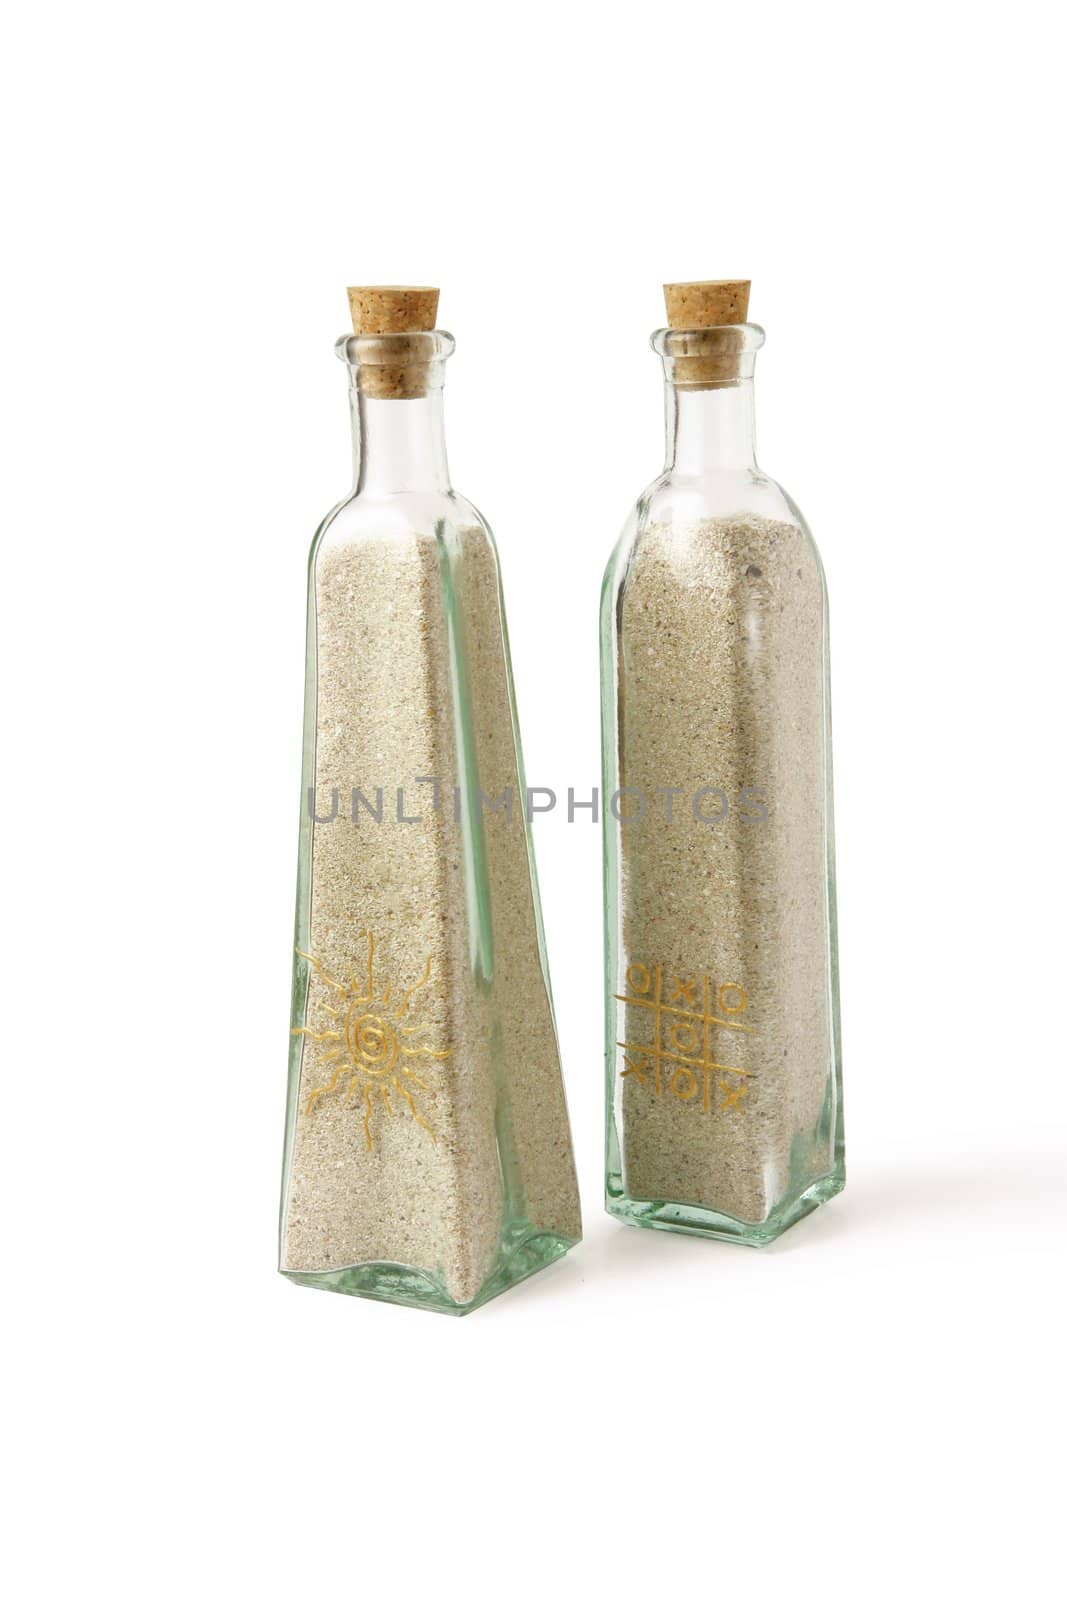 Two glass bottles full of sand